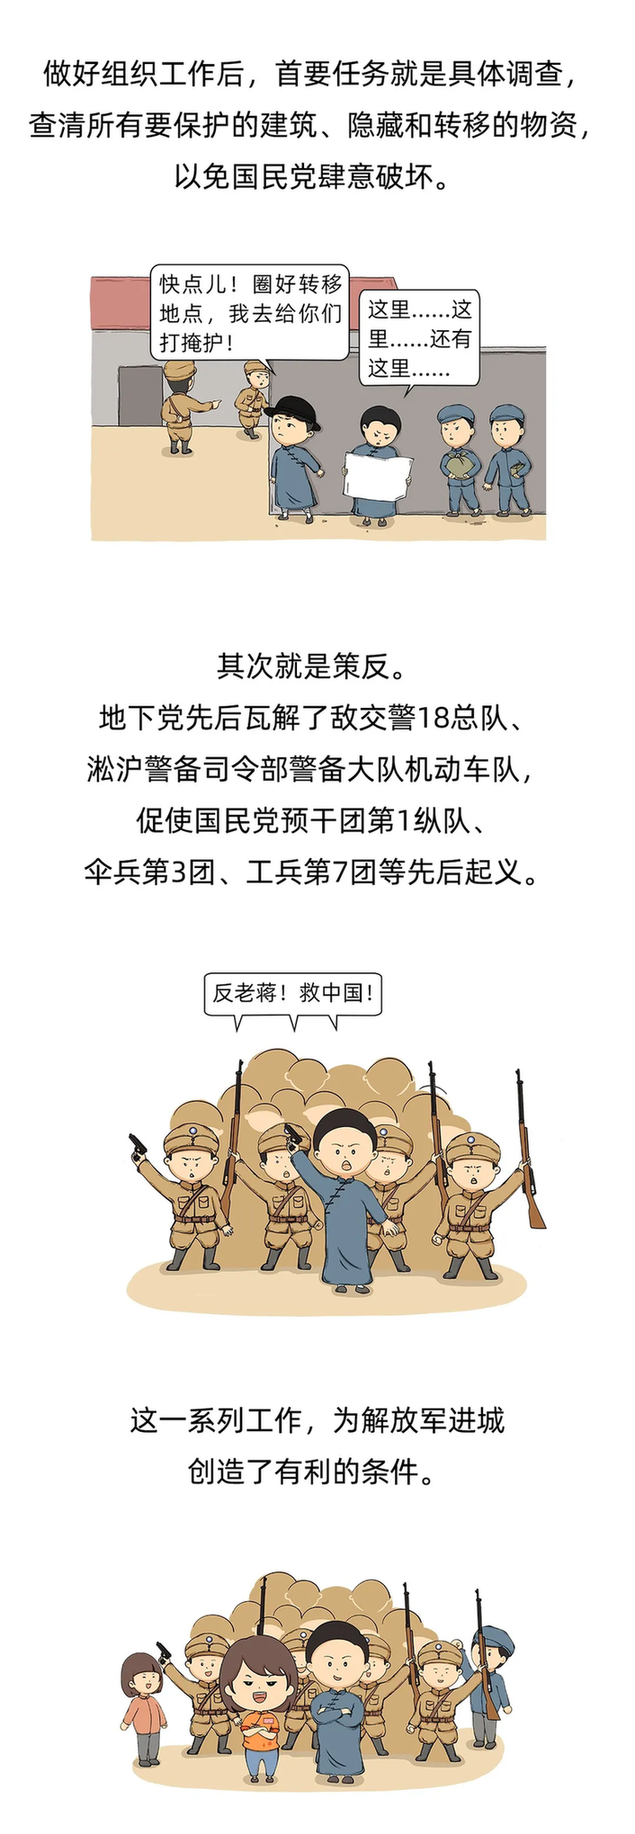 漫绘党史|上海解放之“隐形的守护者”